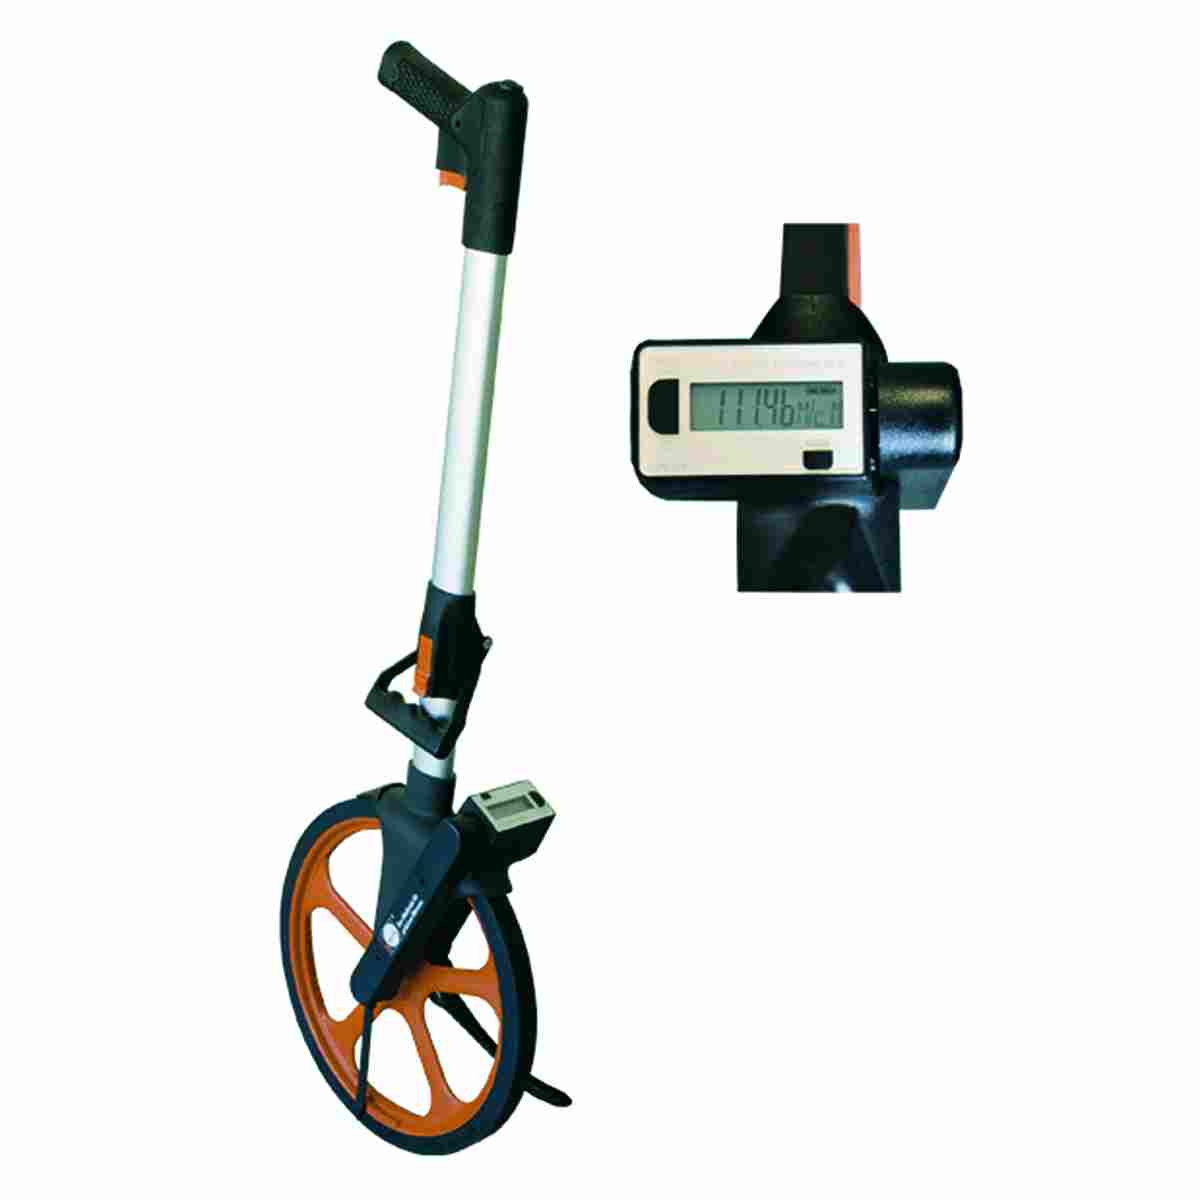 Leicht-Messrad - Digital - mit Rucksack. Gewicht 2,1 kg